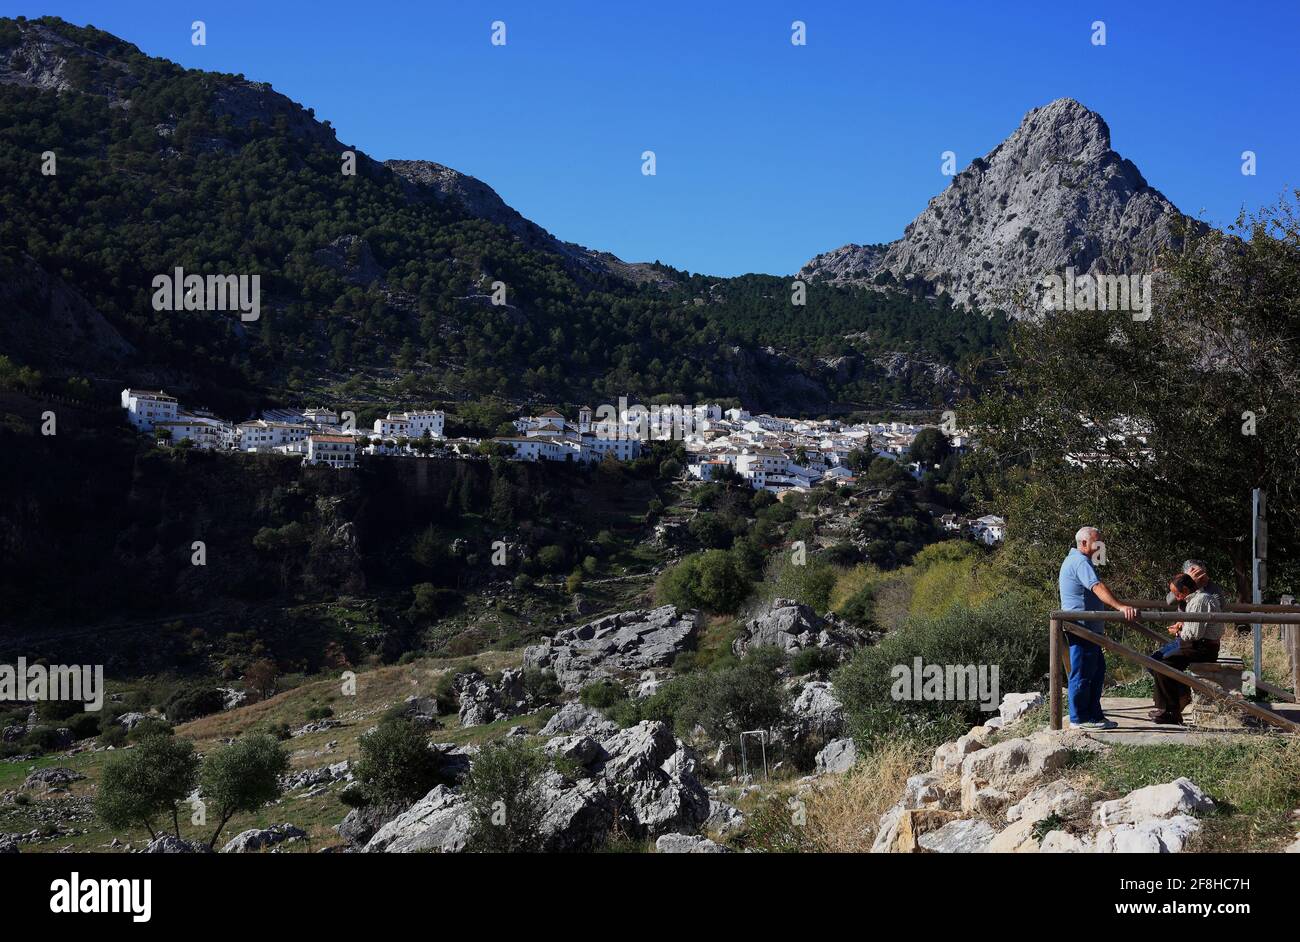 Spanien, Andalusien, Stadt Grazalema in der Provinz Cáditz, an der Ruta de los Pueblos Blancos, Straße zu den Weißen Städten Andalusiens, Blick auf das Dorf, i Stockfoto